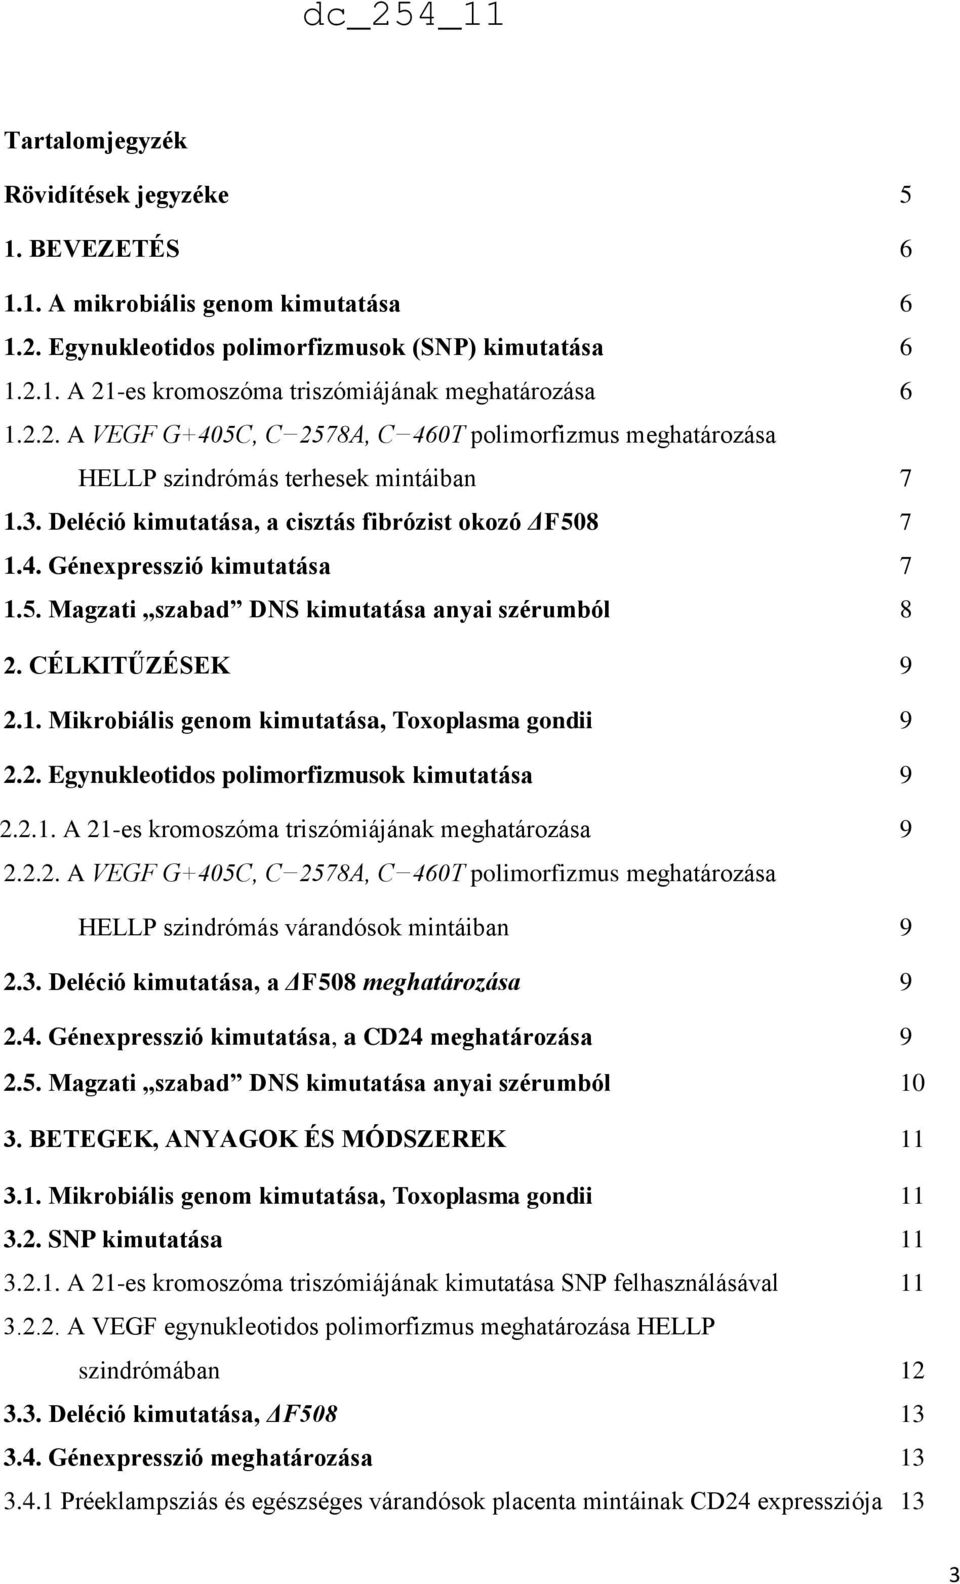 CÉLKITŰZÉSEK 9 2.1. Mikrobiális genom kimutatása, Toxoplasma gondii 9 2.2. Egynukleotidos polimorfizmusok kimutatása 9 2.2.1. A 21-es kromoszóma triszómiájának meghatározása 9 2.2.2. A VEGF G+405C, C 2578A, C 460T polimorfizmus meghatározása HELLP szindrómás várandósok mintáiban 9 2.